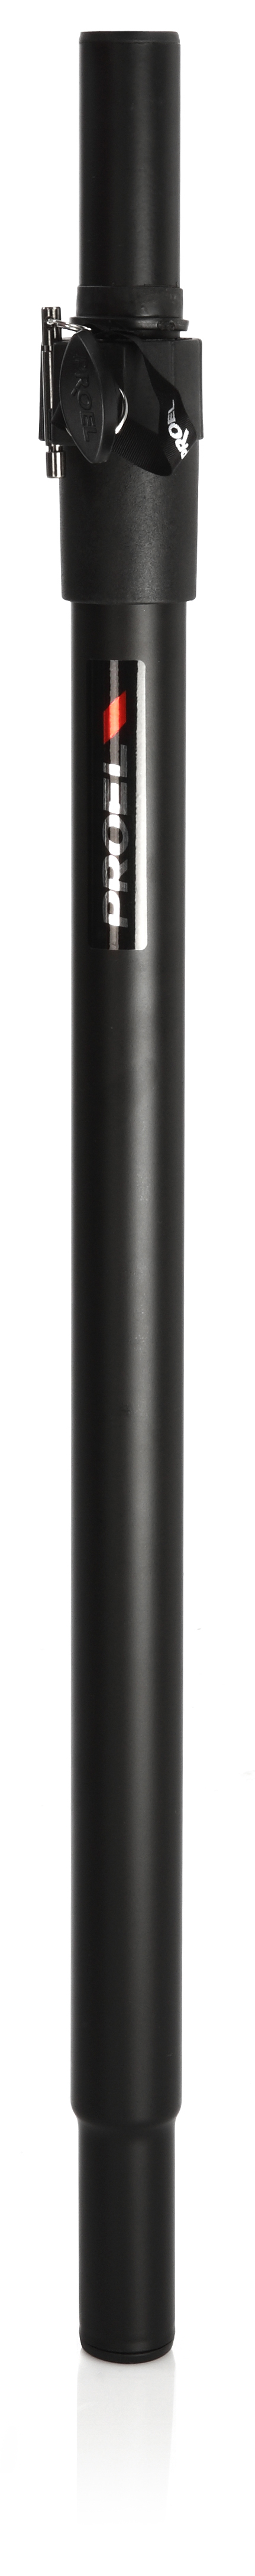 Proel KP210 - Телескопическая штанга для акуст.систем